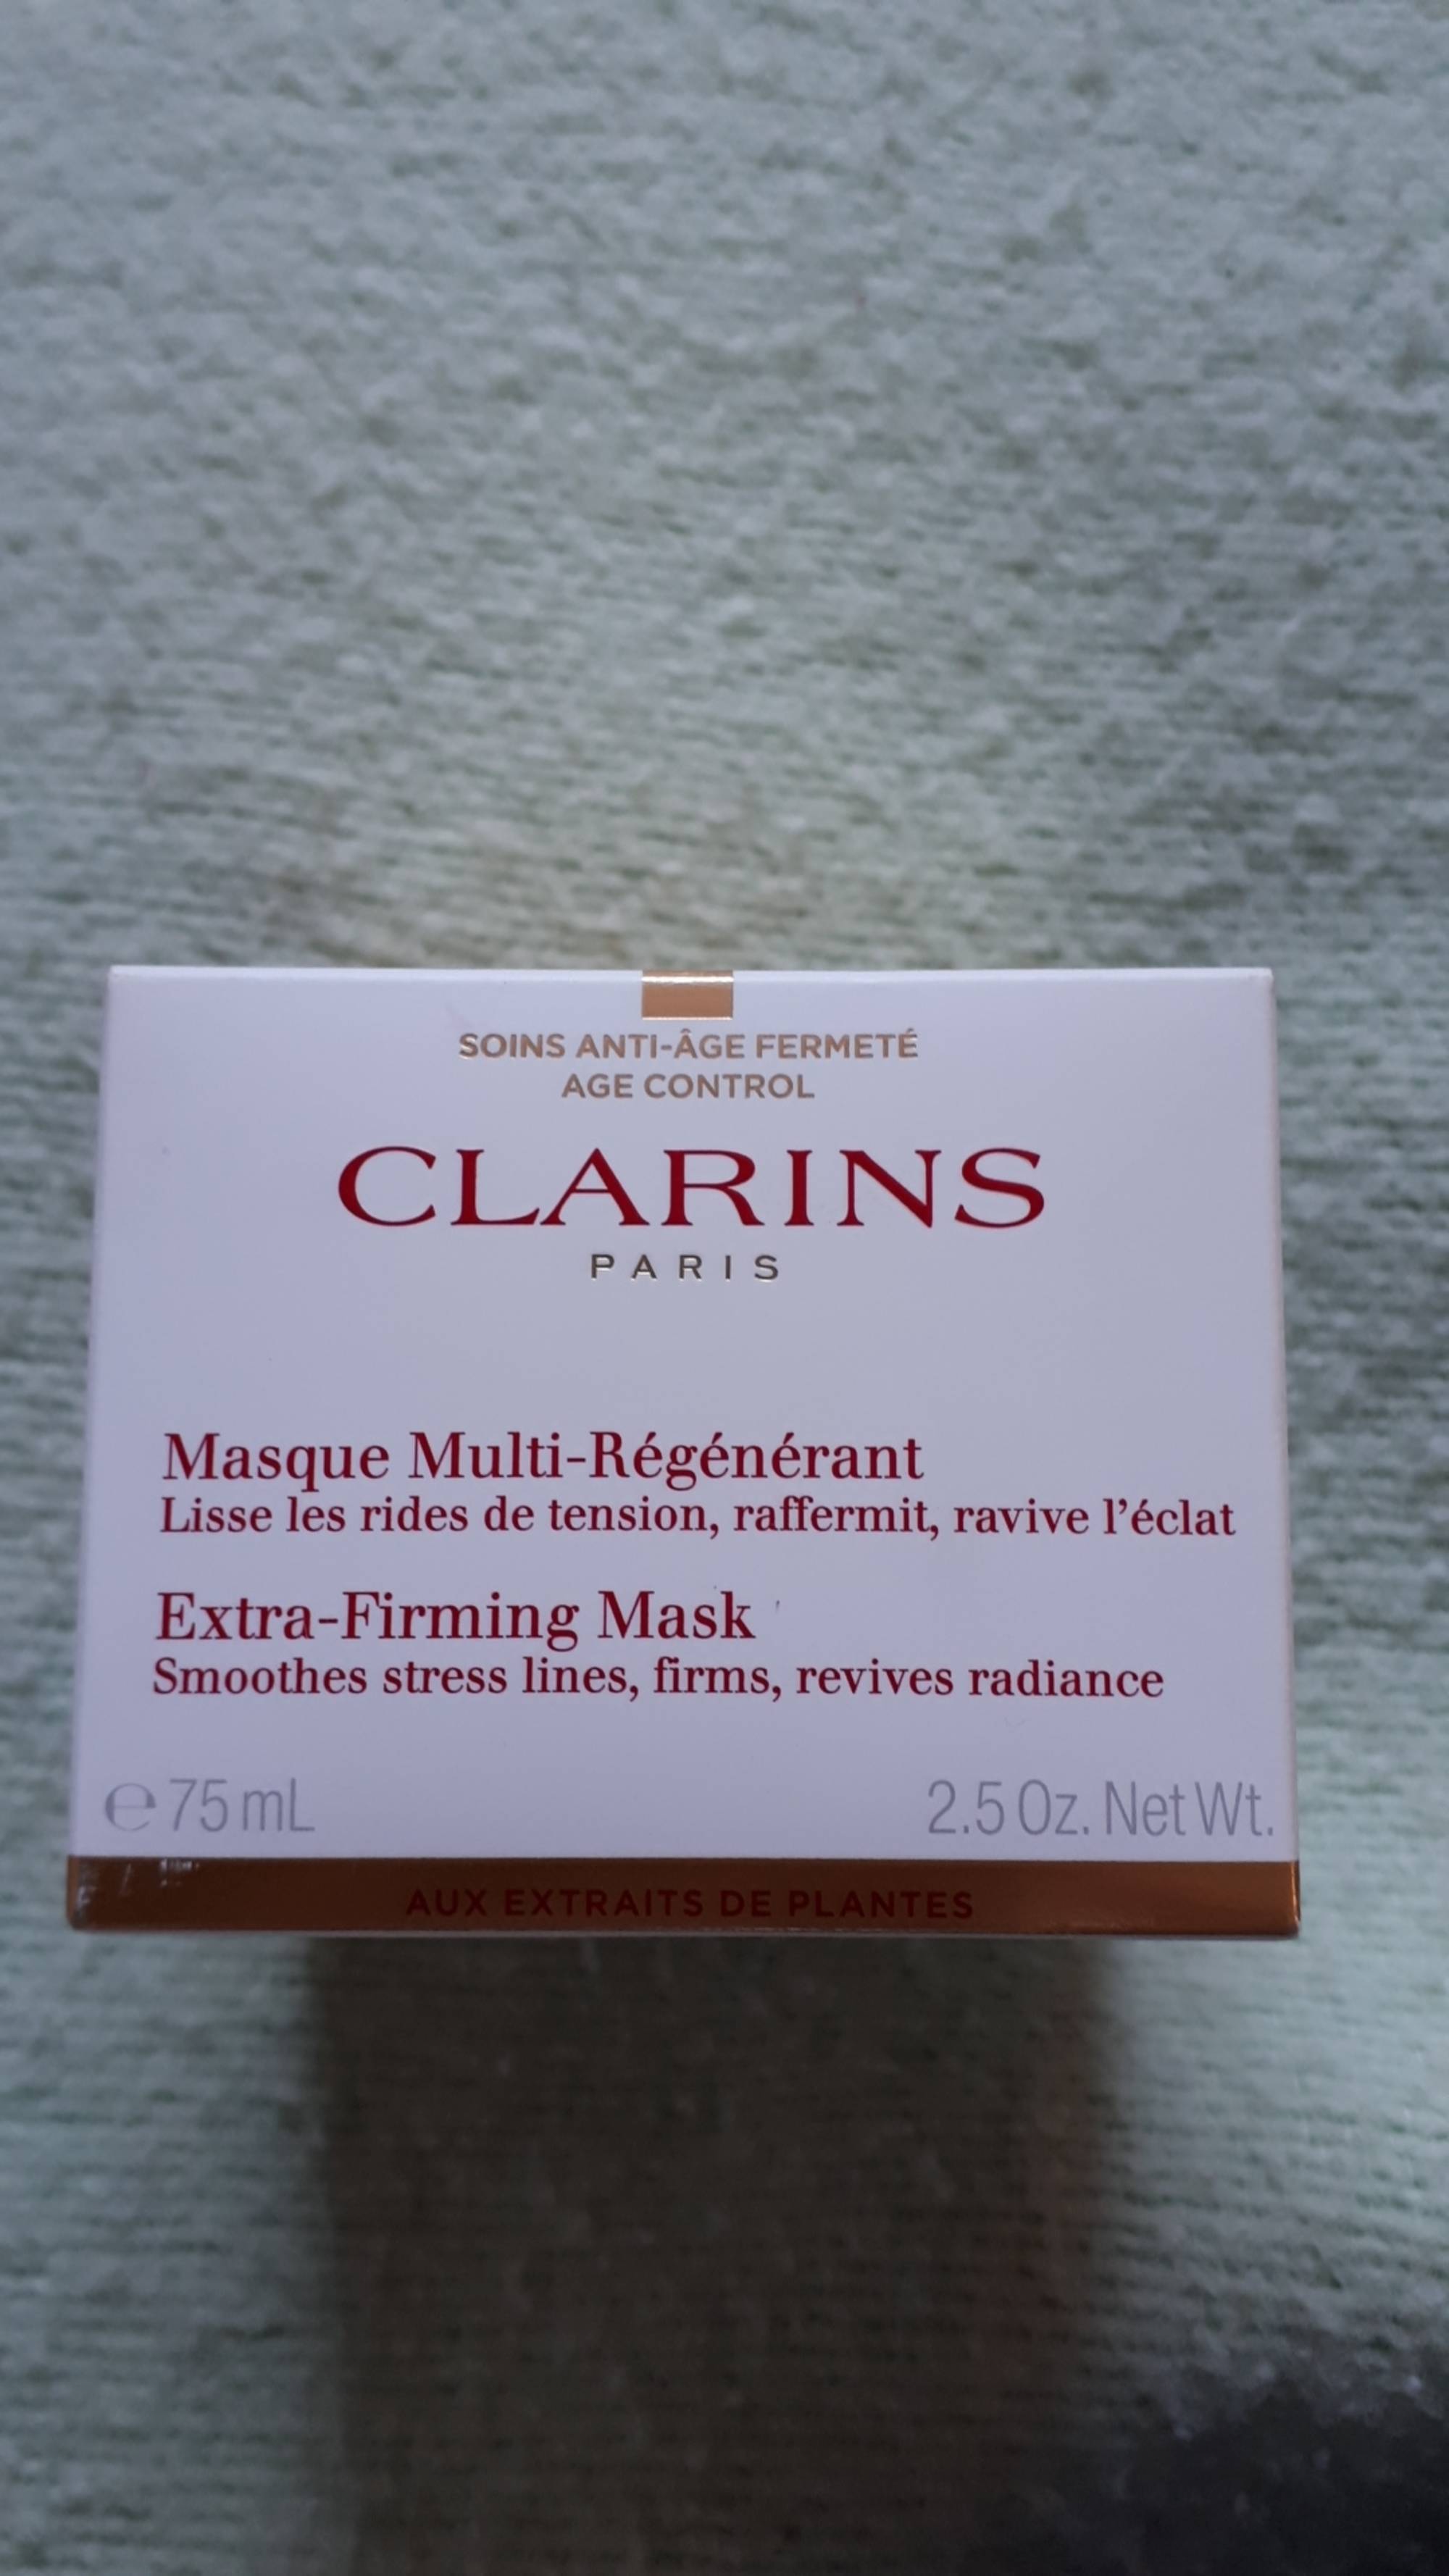 CLARINS PARIS - Soins anti-âge fermeté - Masque multi-régénérant